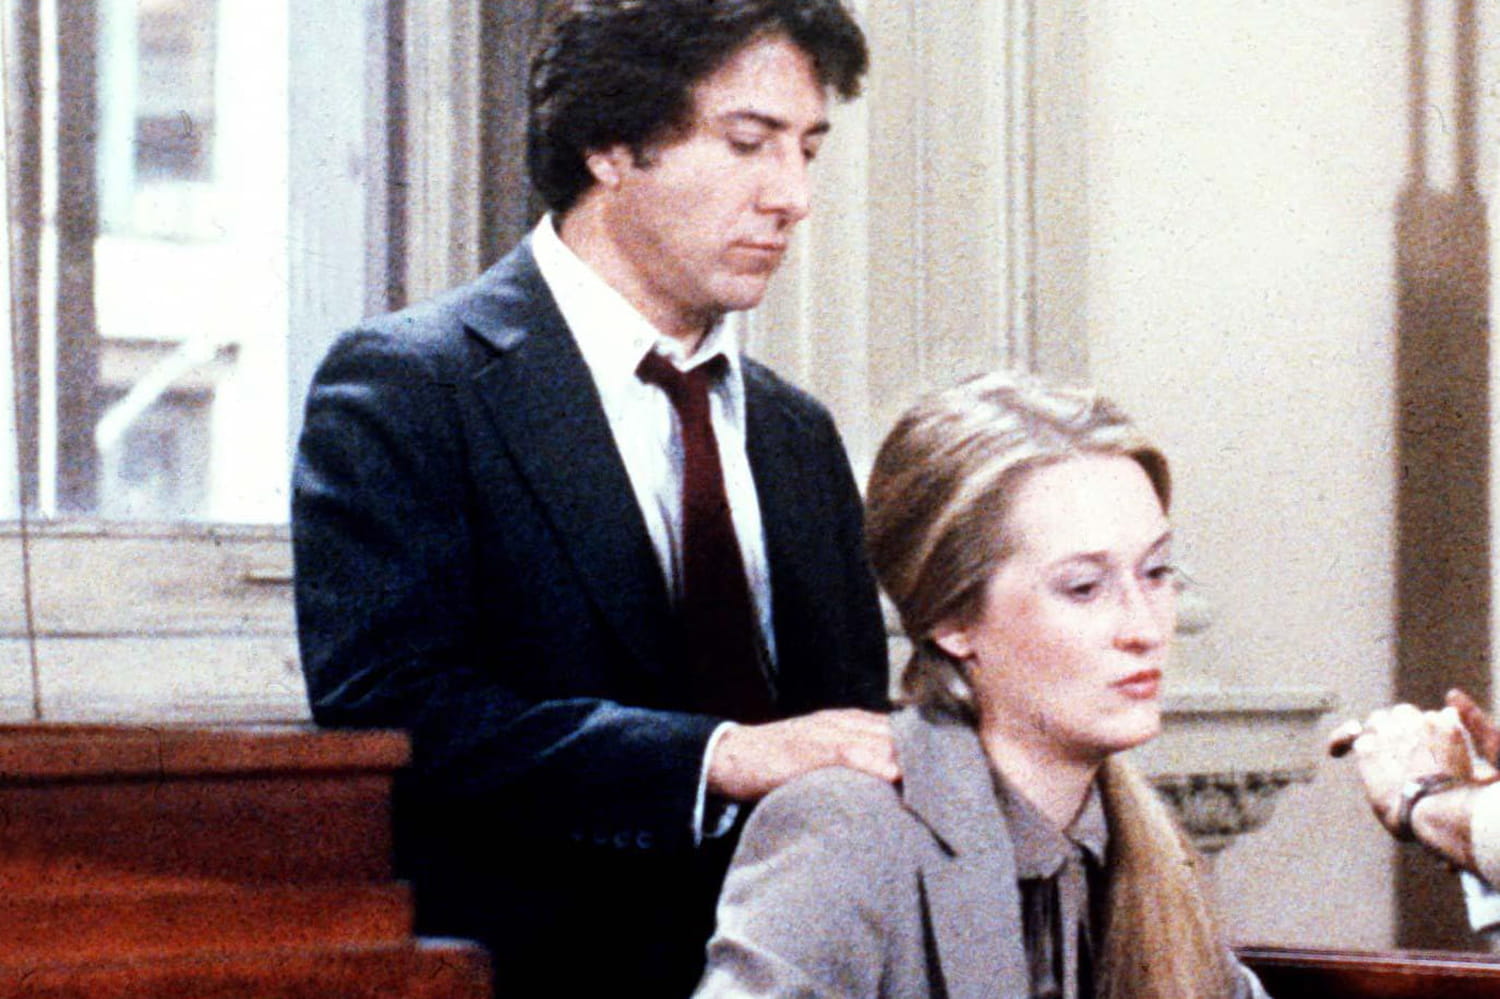 Dustin Hoffman "a dépassé les bornes" avec Meryl Streep sur le tournage de "Kramer contre Kramer"